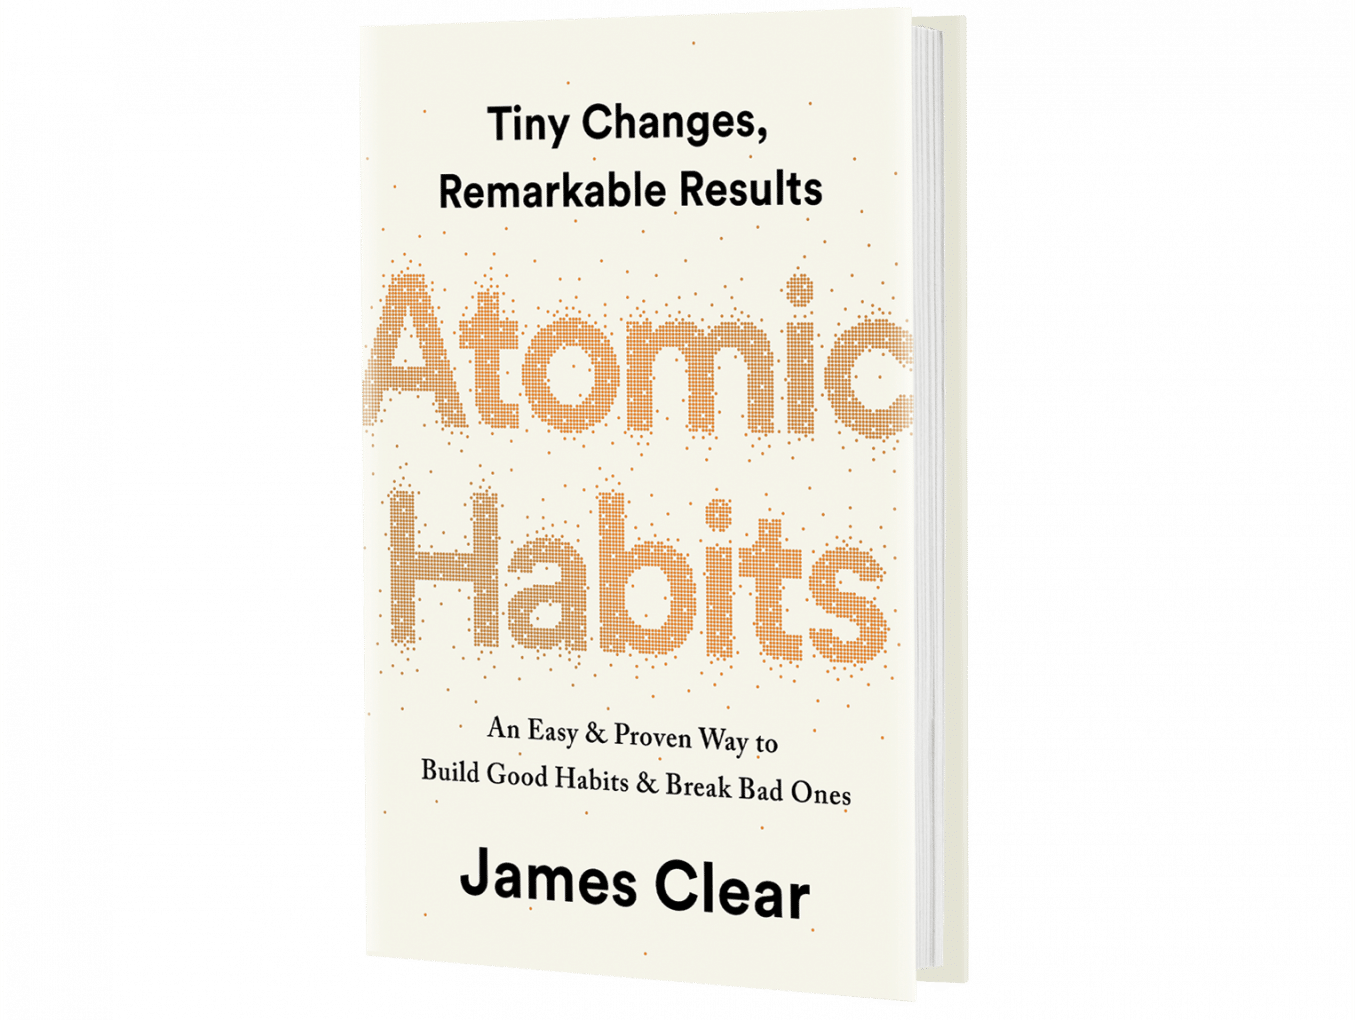 Atomic habits pdf